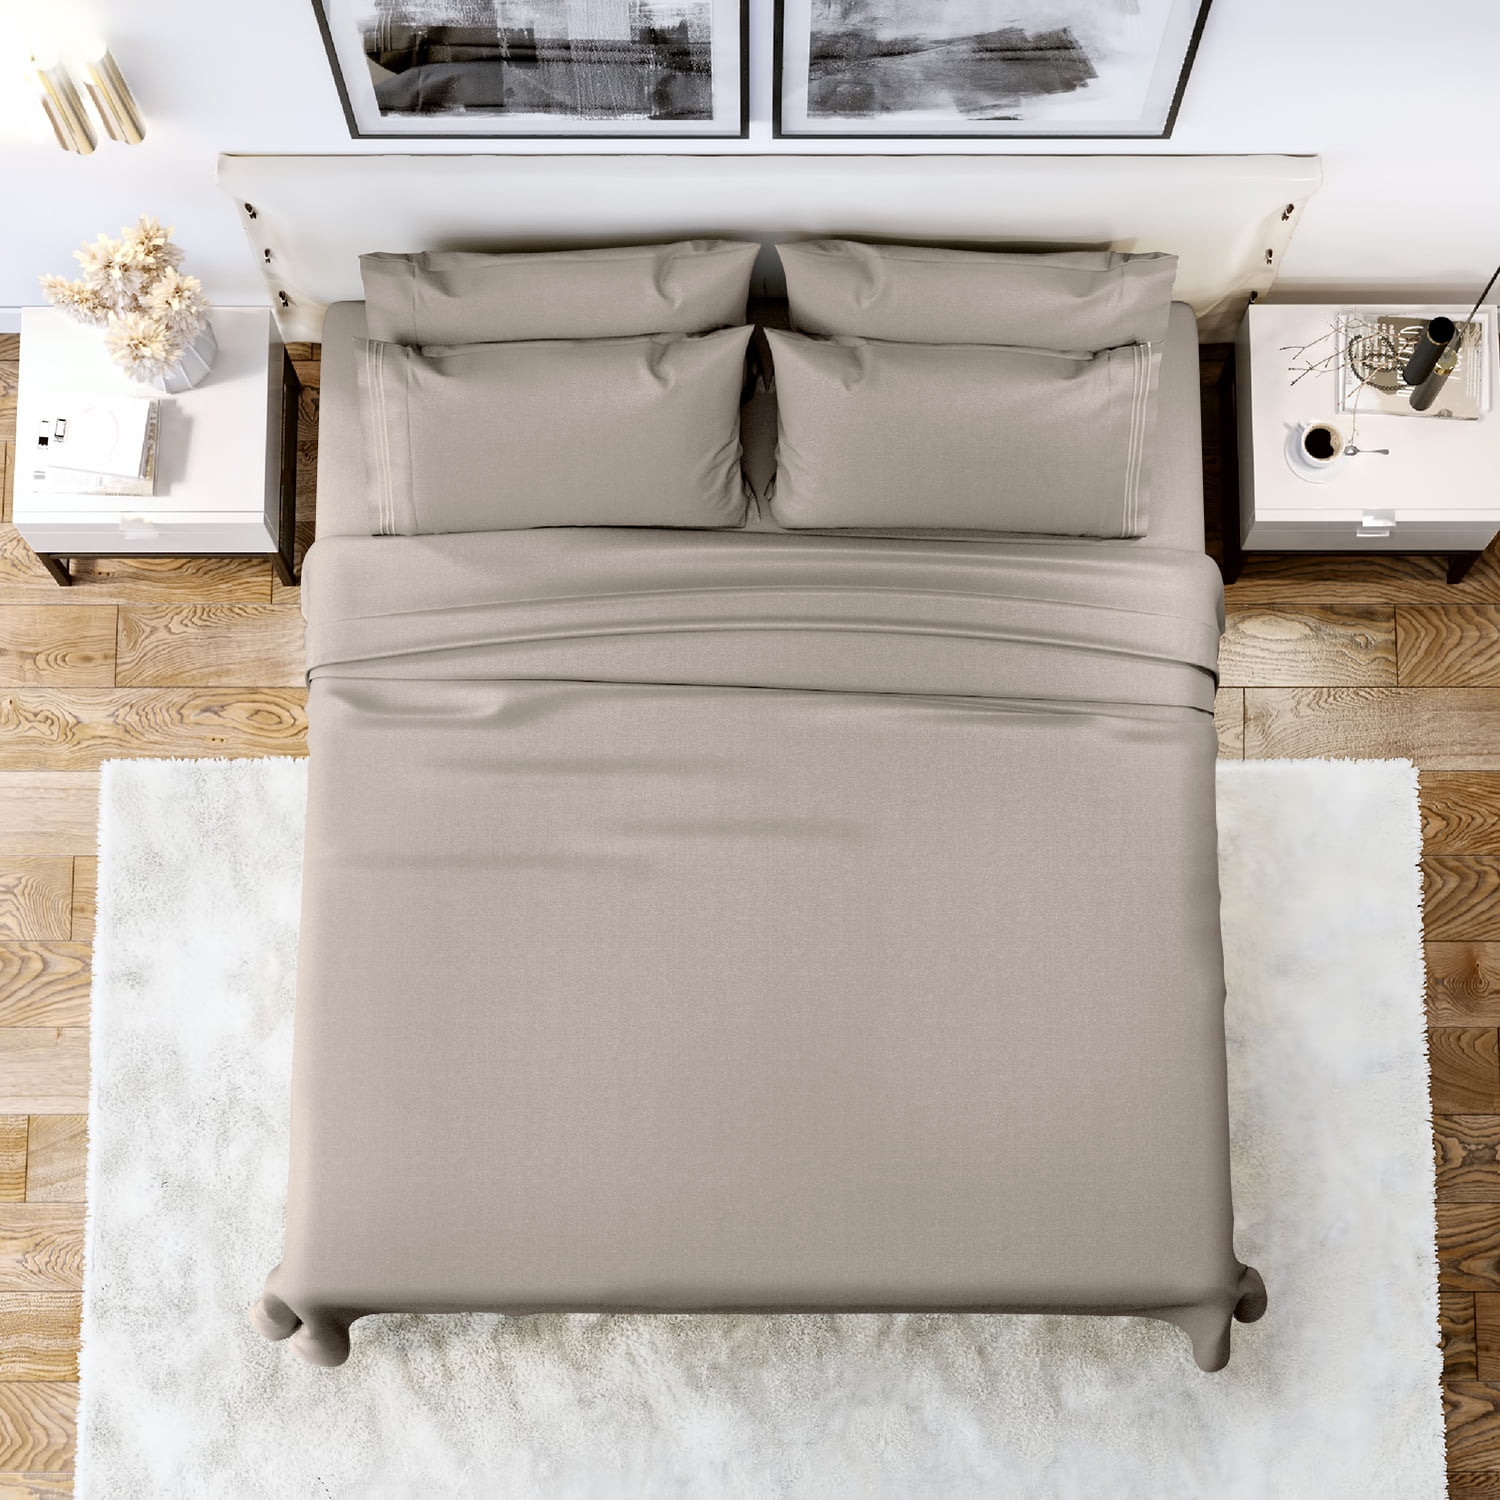 Danjor Linens Queen Size Bed Sheets Set - 1800 Series 6 Piece Bedding Sheet  & Pi